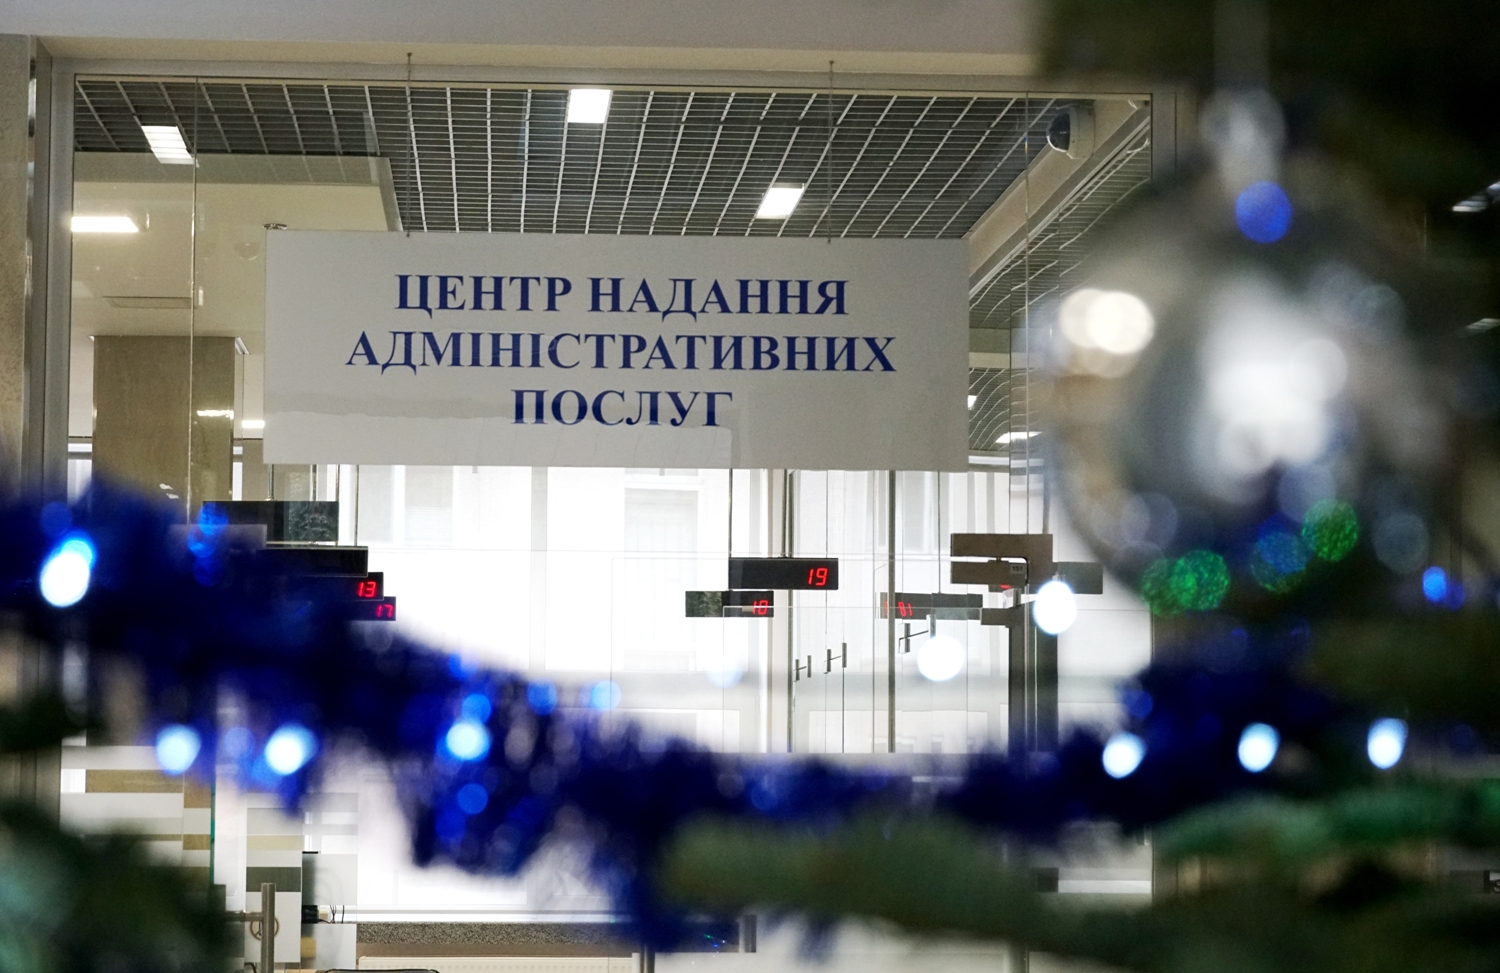 Центр надання адміністративних послуг Ужгородської міської ради інформує про роботу у передсвяткові і святкові дні